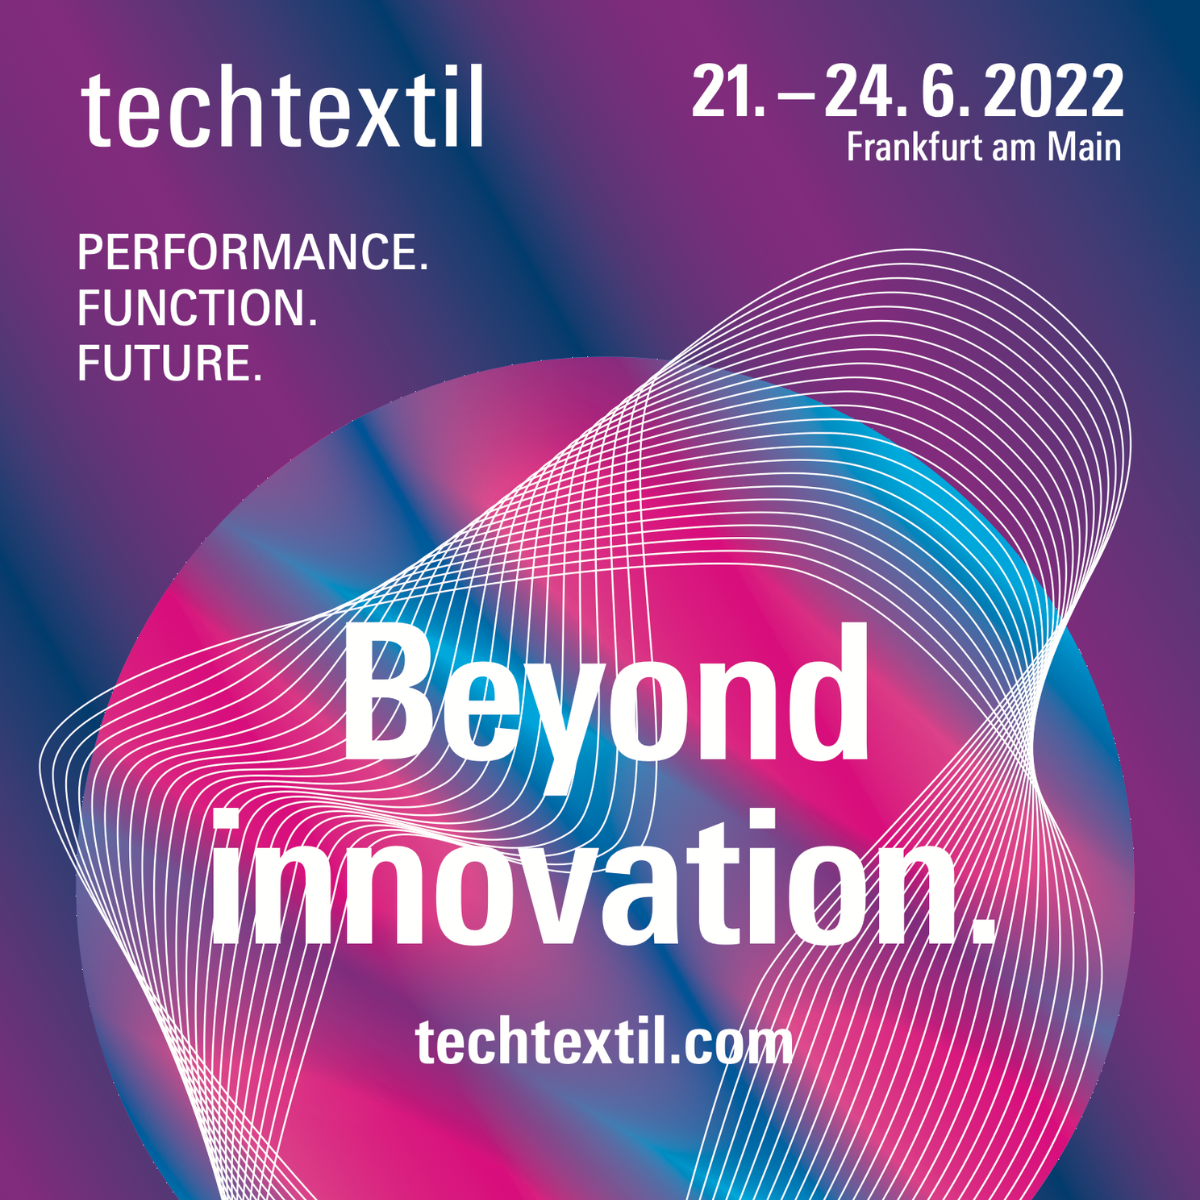 See you in Frankfurt for Techtextil 2022